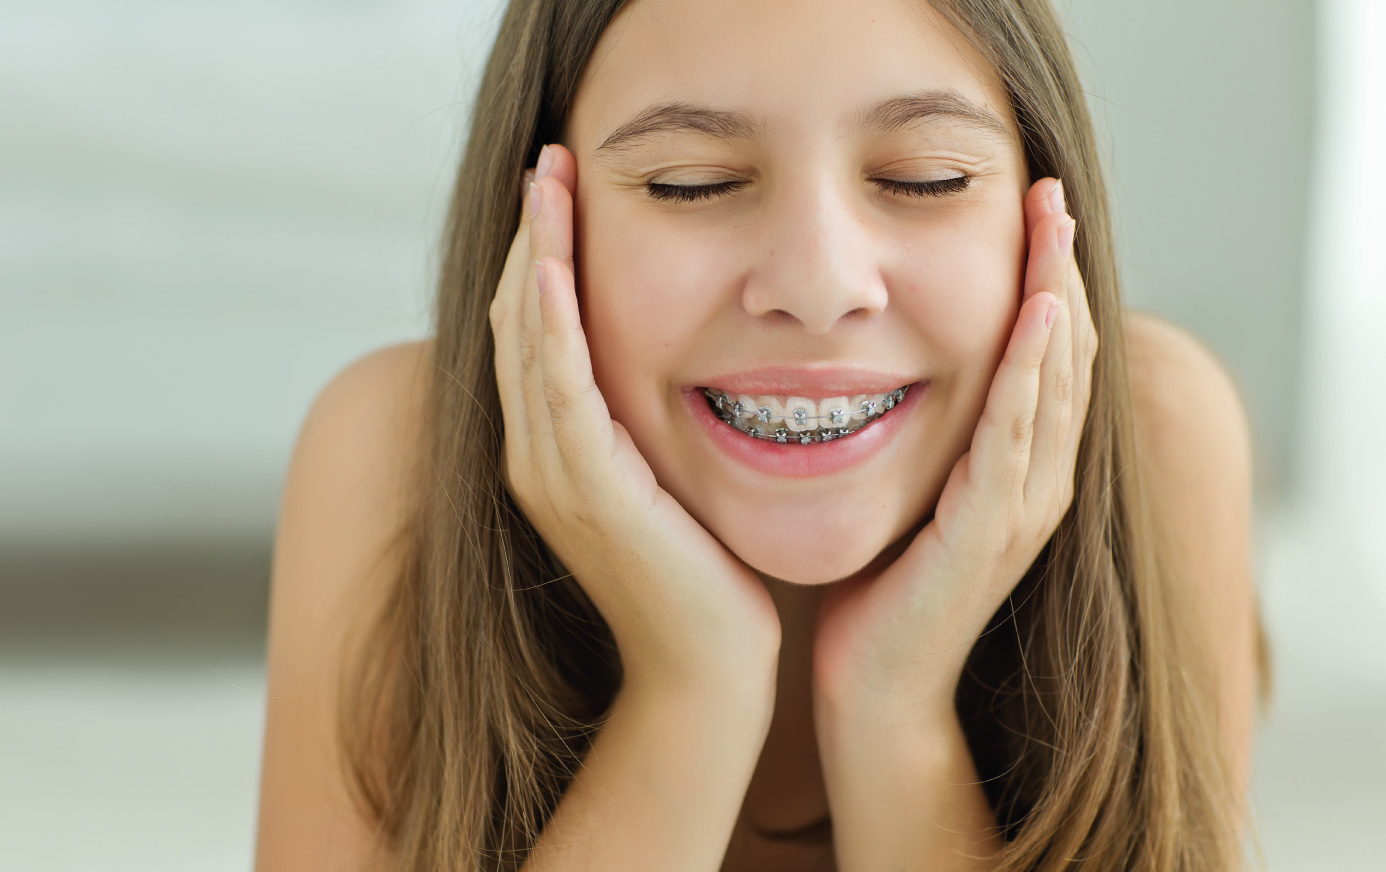 Apparecchio denti: come funziona e quanto costa